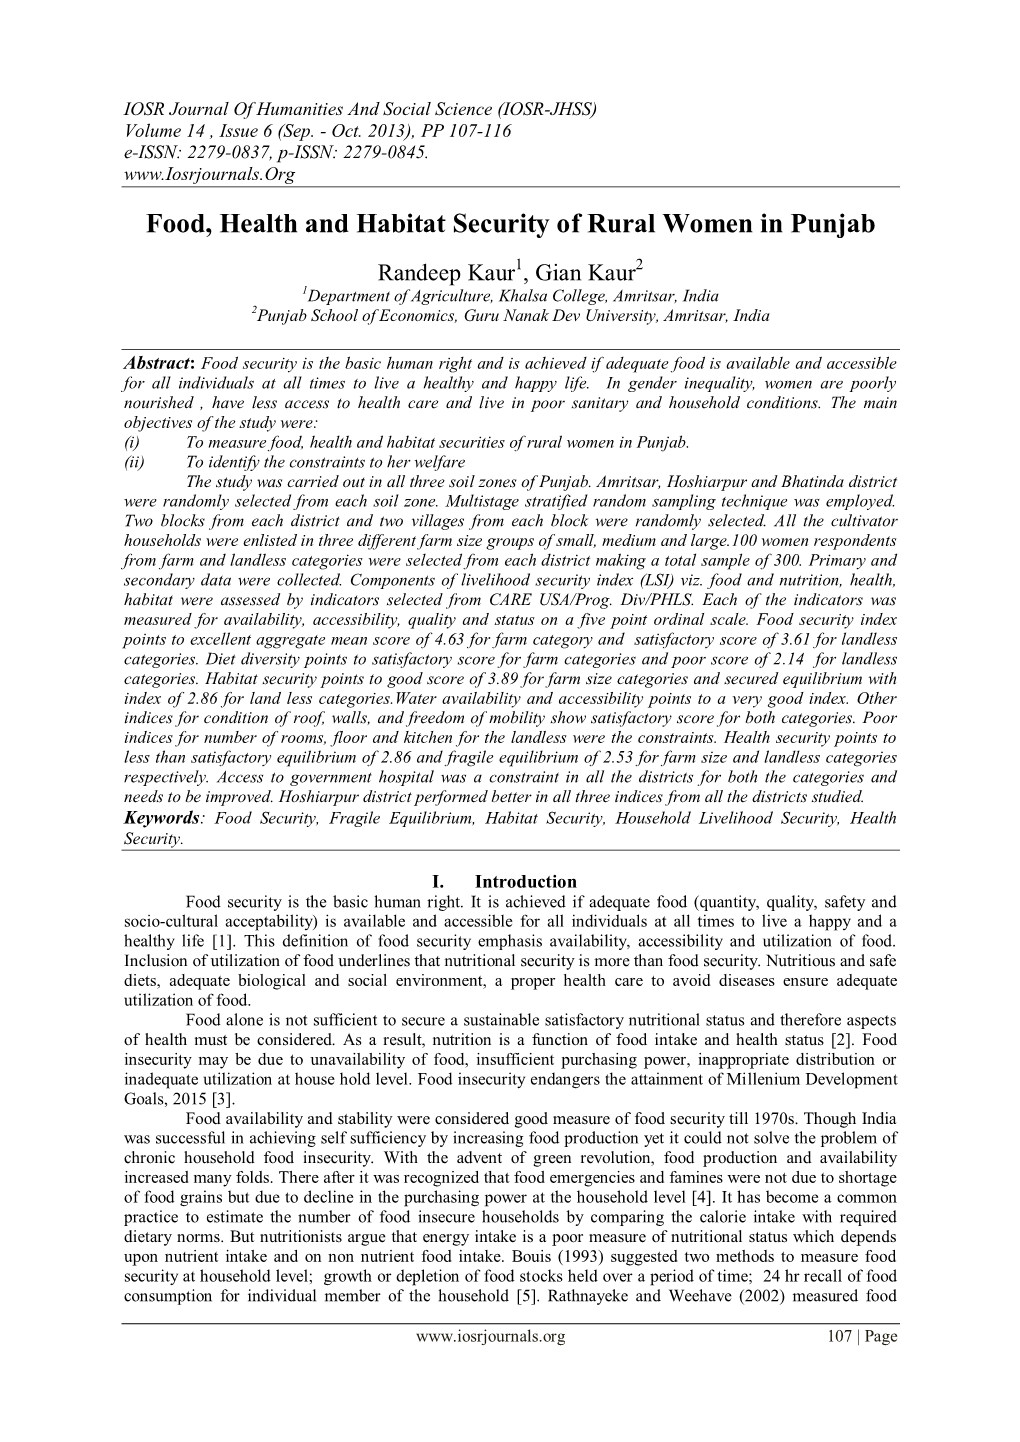 Food, Health and Habitat Security of Rural Women in Punjab